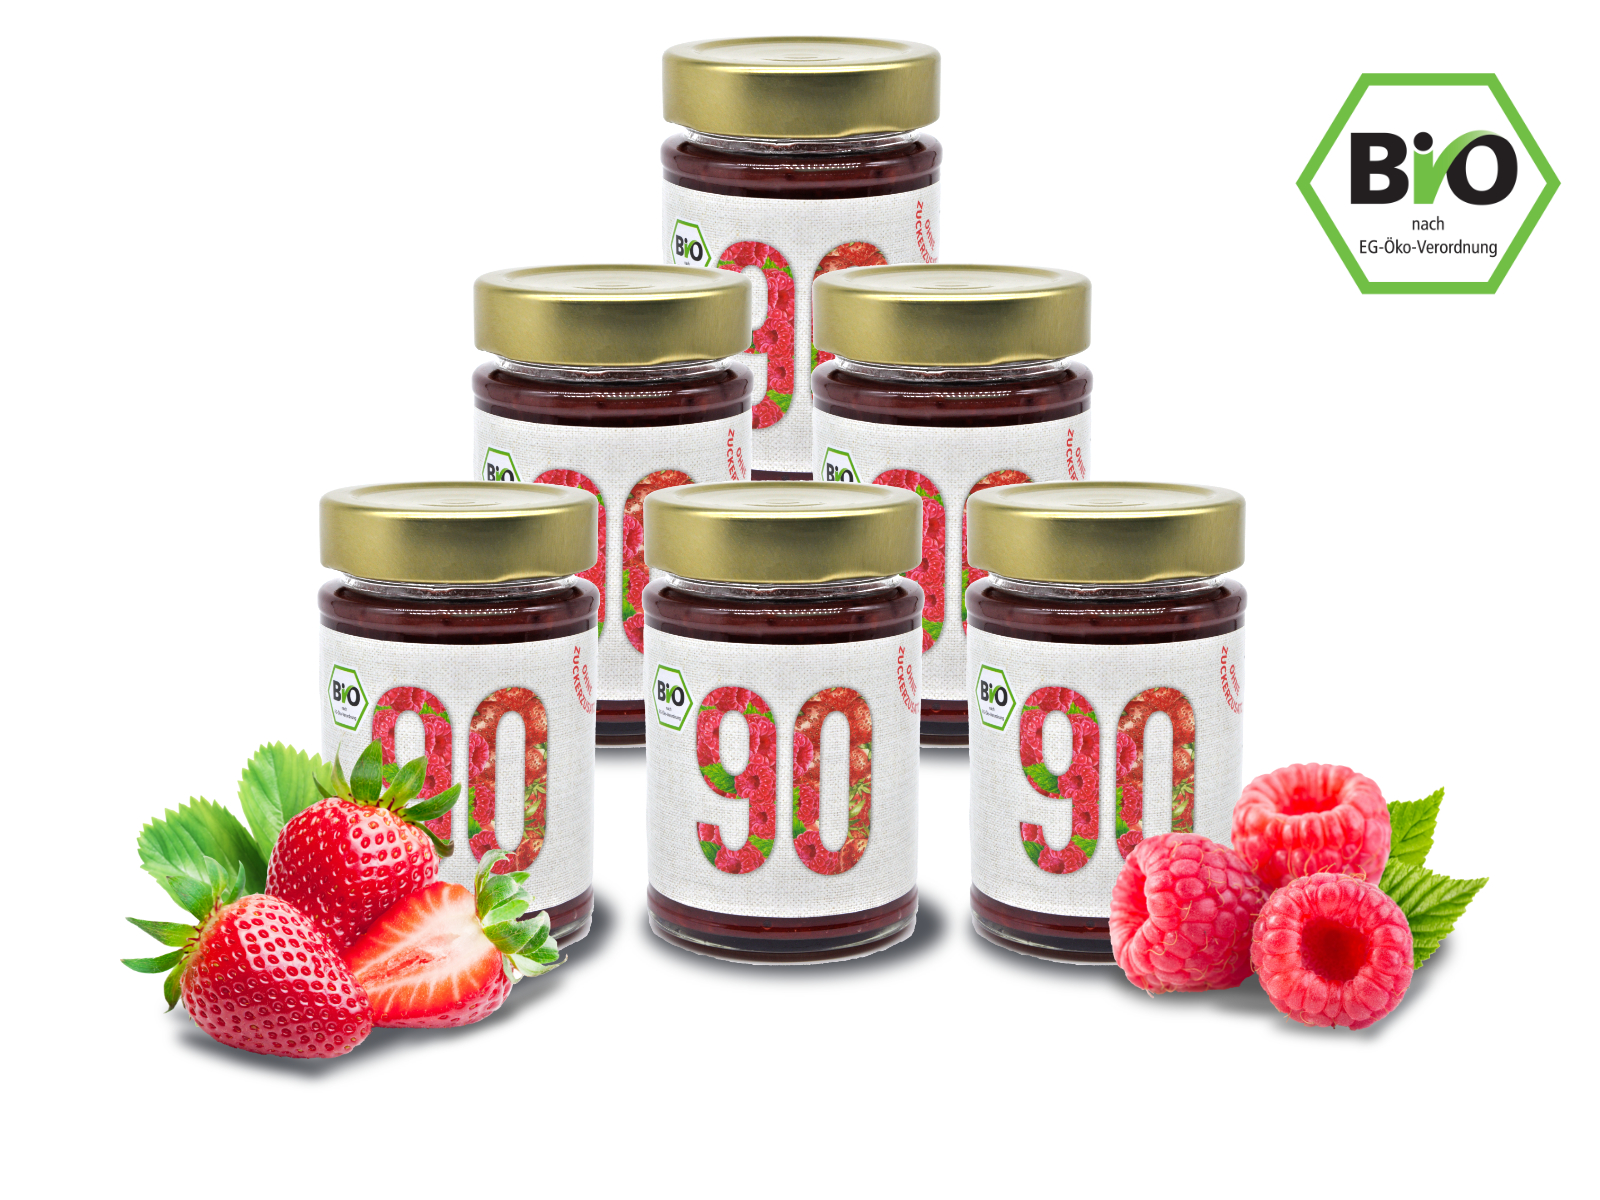 6x Sibani BIO 90% Fruchtaufstrich, Himbeere-Erdbeere , mit Erythrit* gesüßt, 180g